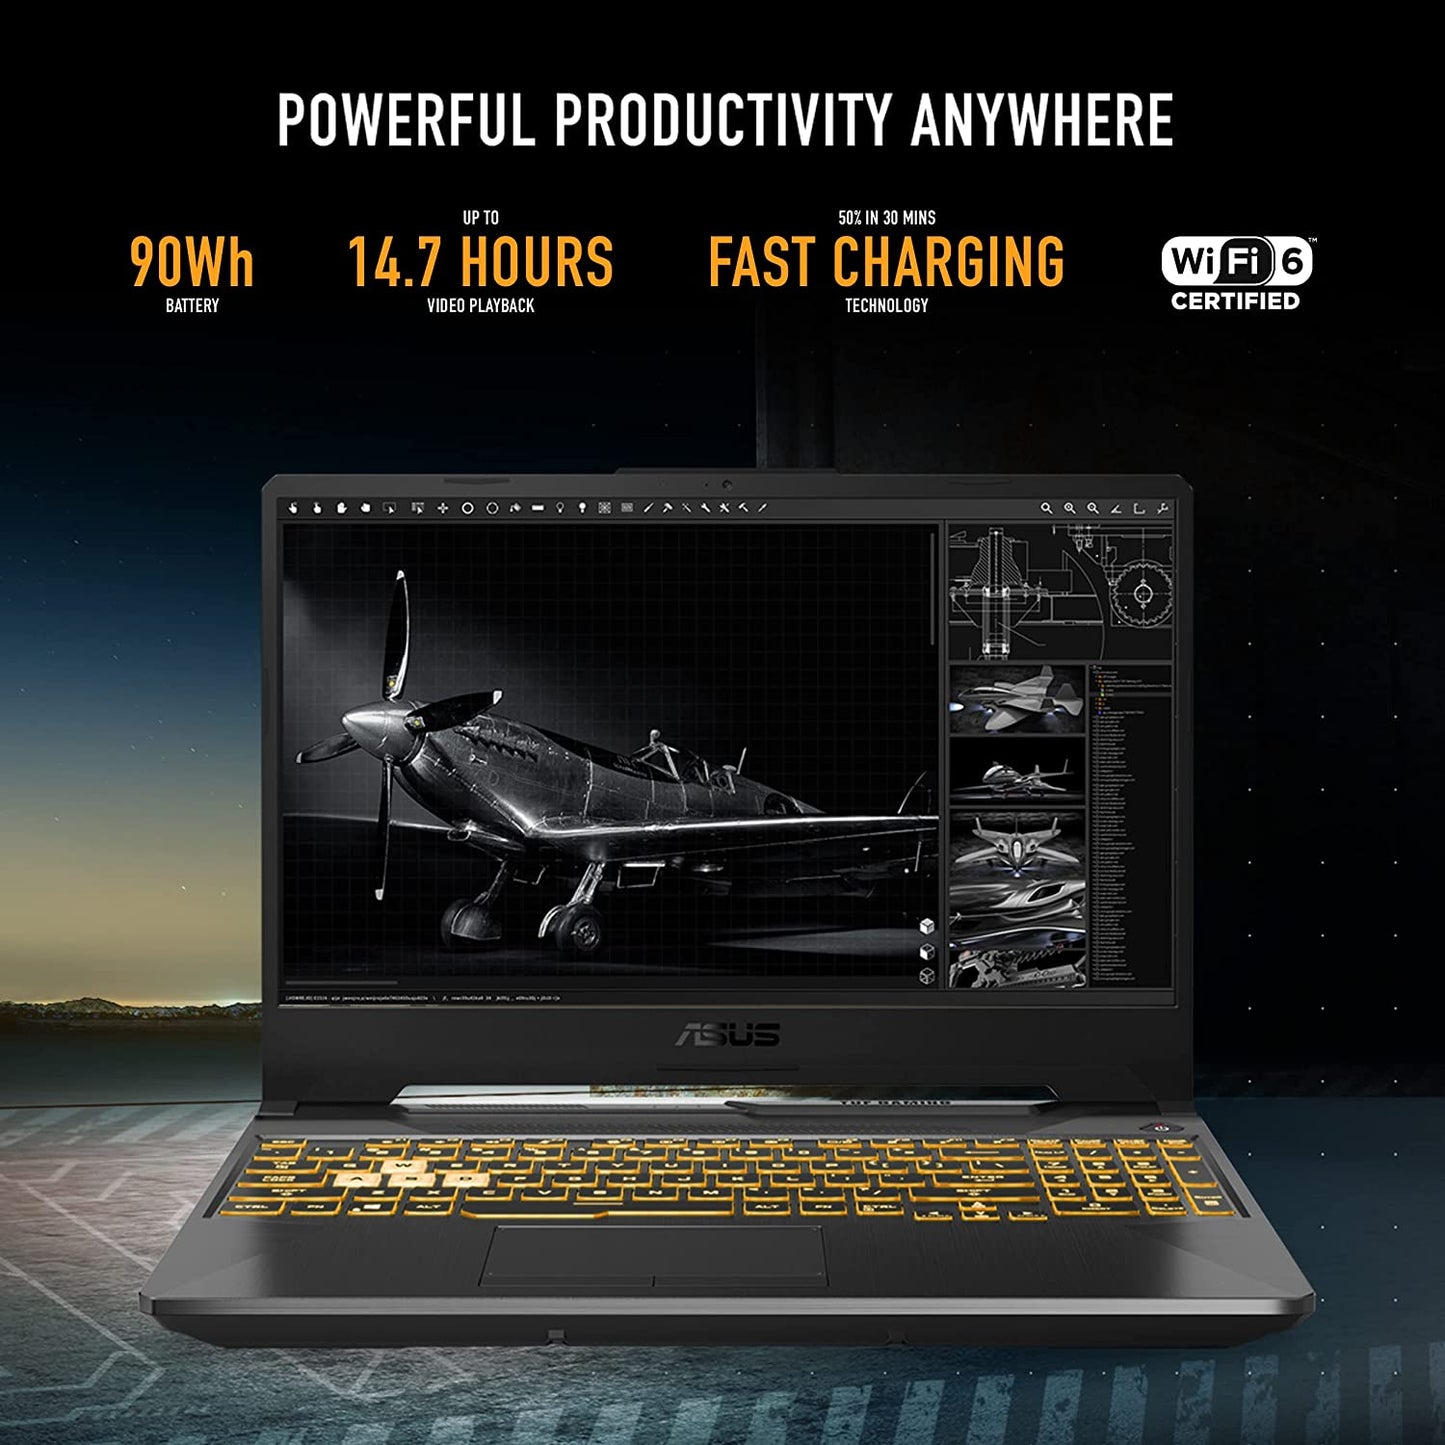 ASUS TUF F15 - Laptop para juegos, pantalla IPS FHD de 15.6 pulgadas, procesador Intel Core i5-10300H, GeForce GTX 1650, 8GB DDR4 RAM, 512GB PCIe SSD